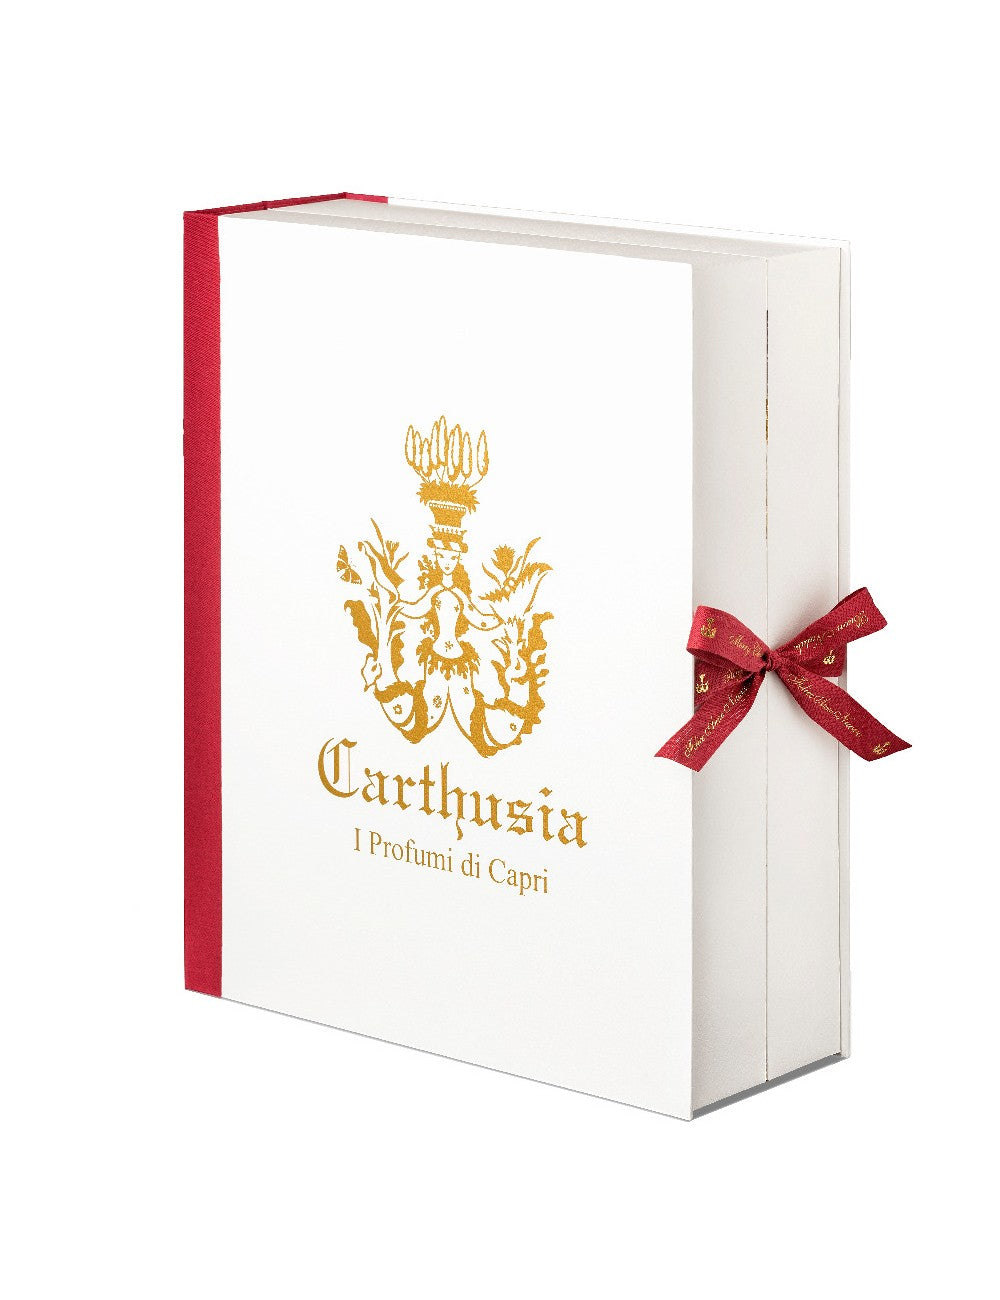 Миниатюрная тканевая отделка адвент-календаря Carthusia, акция на 24 аромата